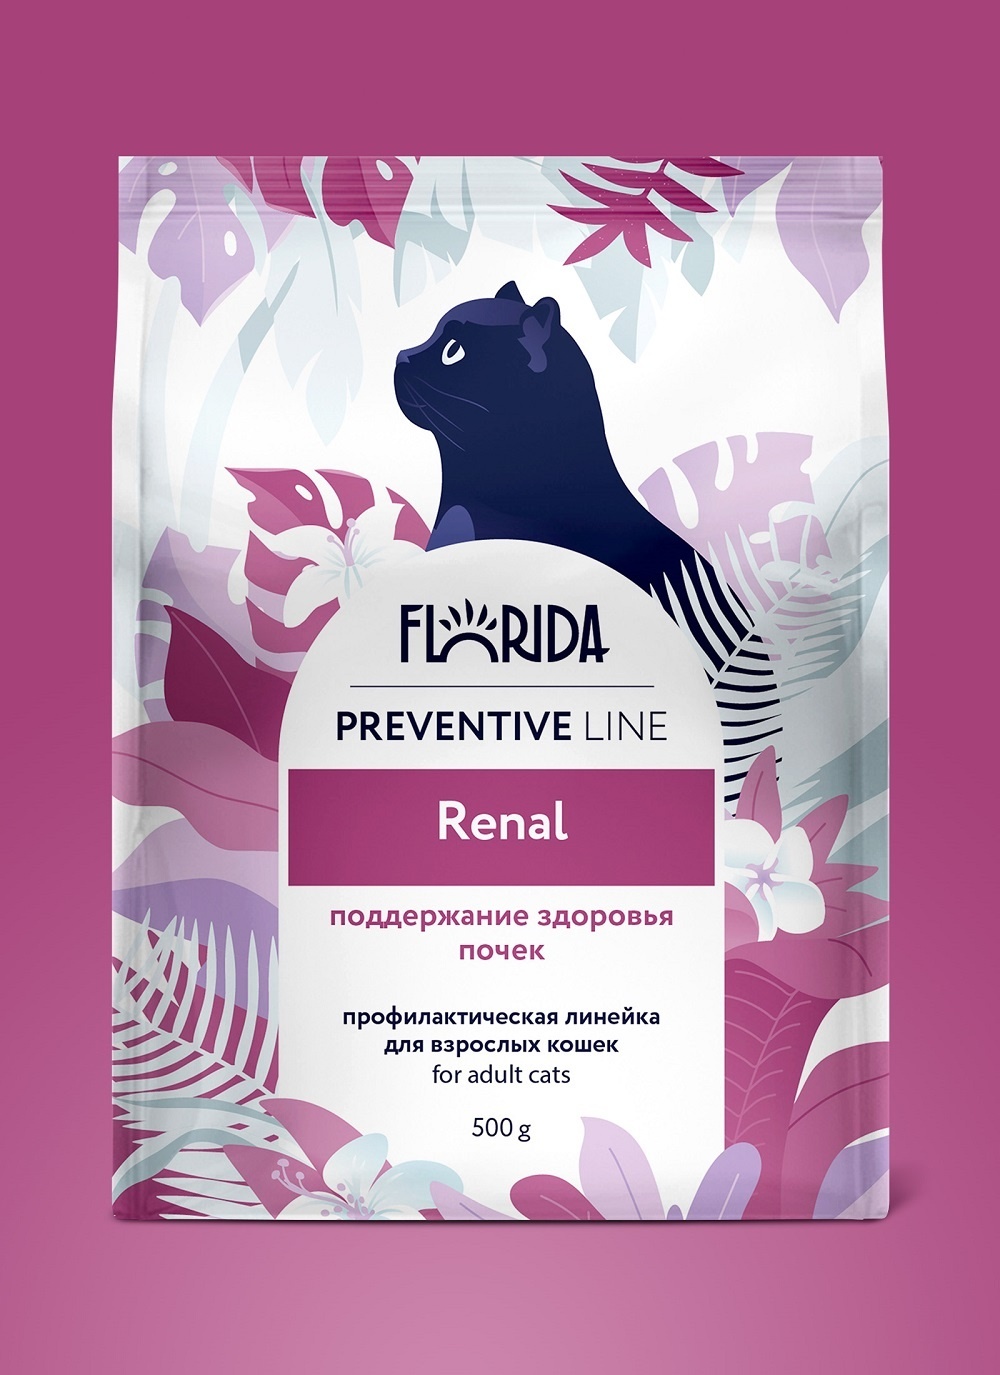 Florida Preventive Line Florida Preventive Line renal сухой корм для кошек Поддержание здоровья почек (1,5 кг)